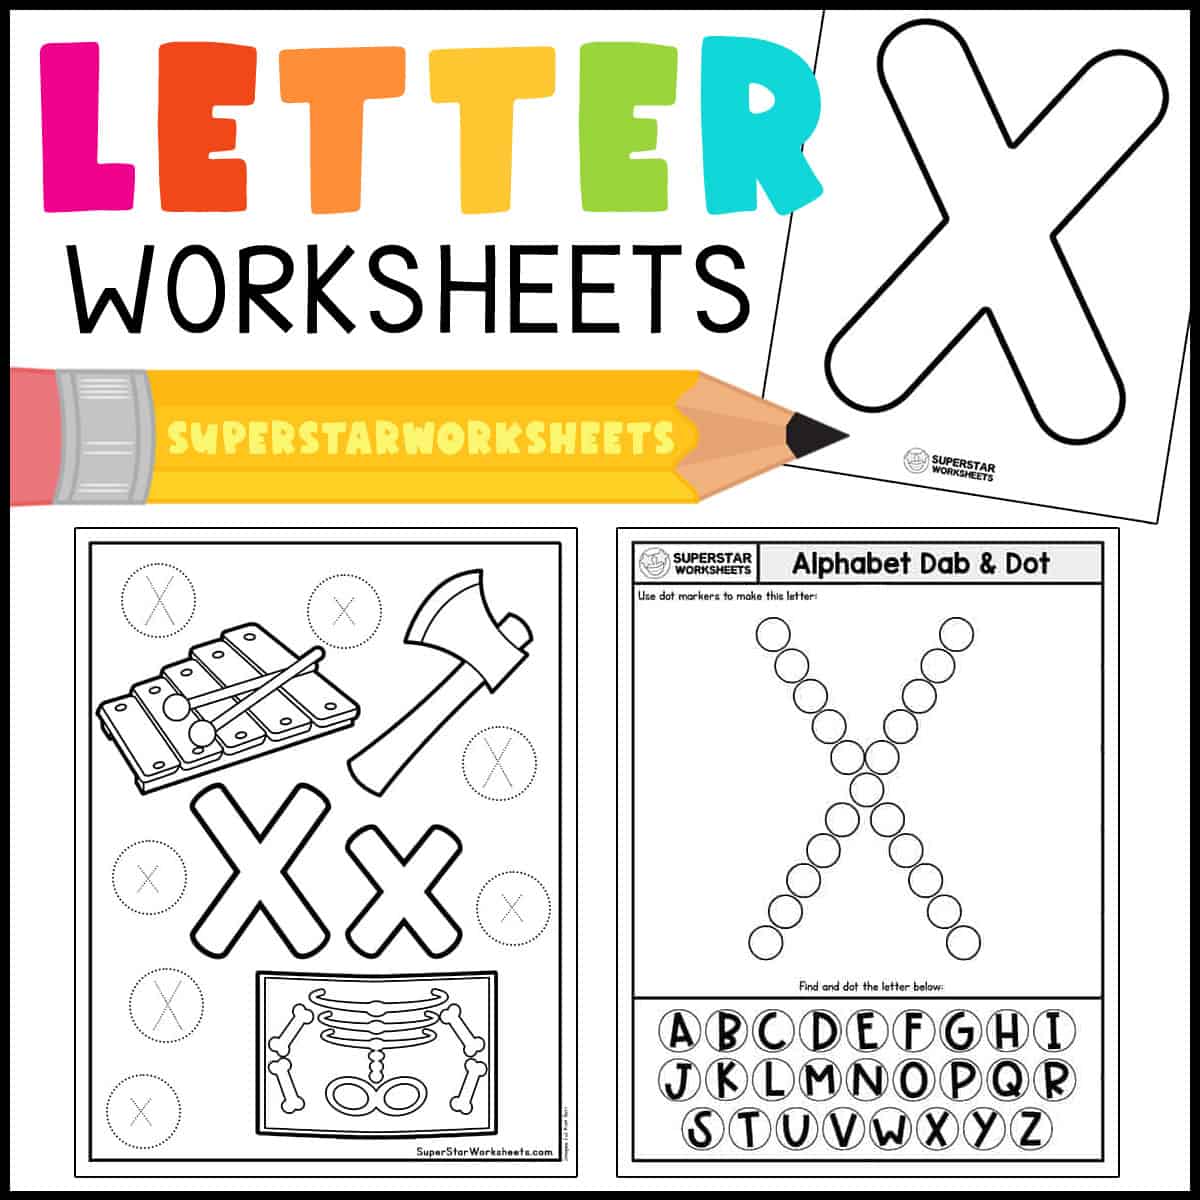 letter x activities